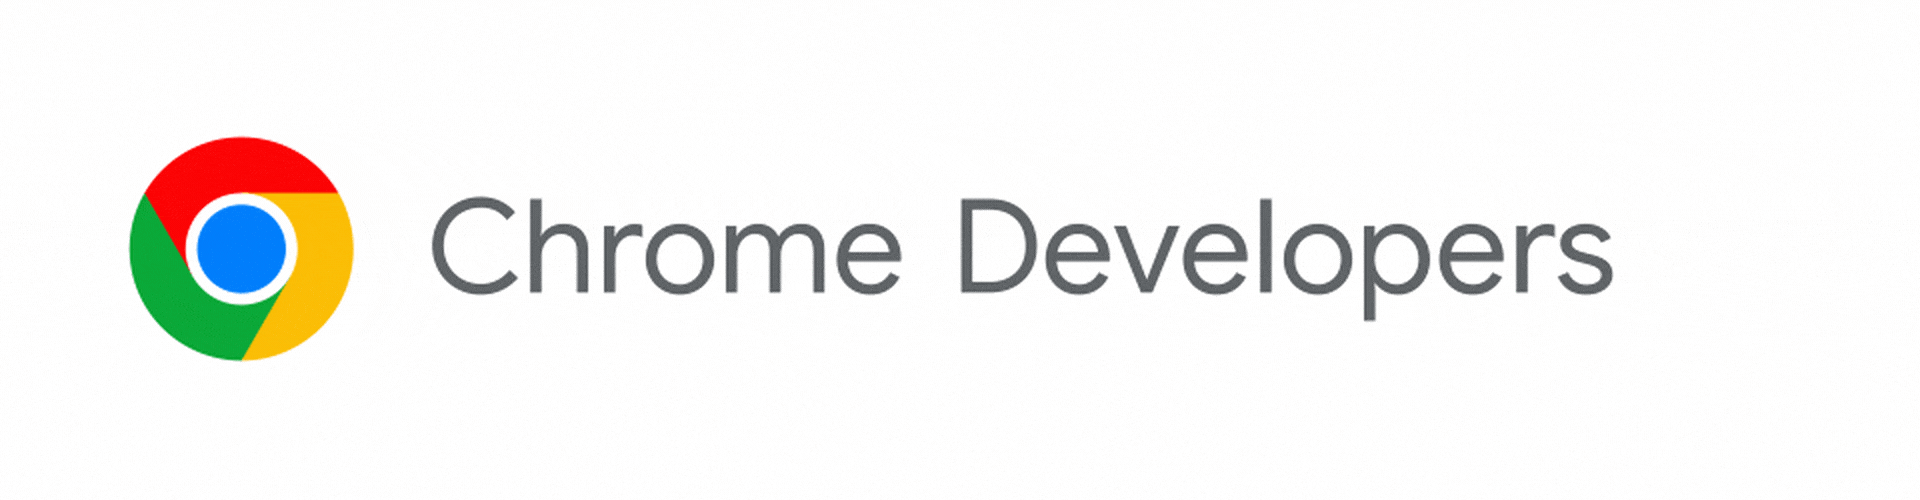 O logotipo do Chrome Developers está se transformando no Chrome for Developers.